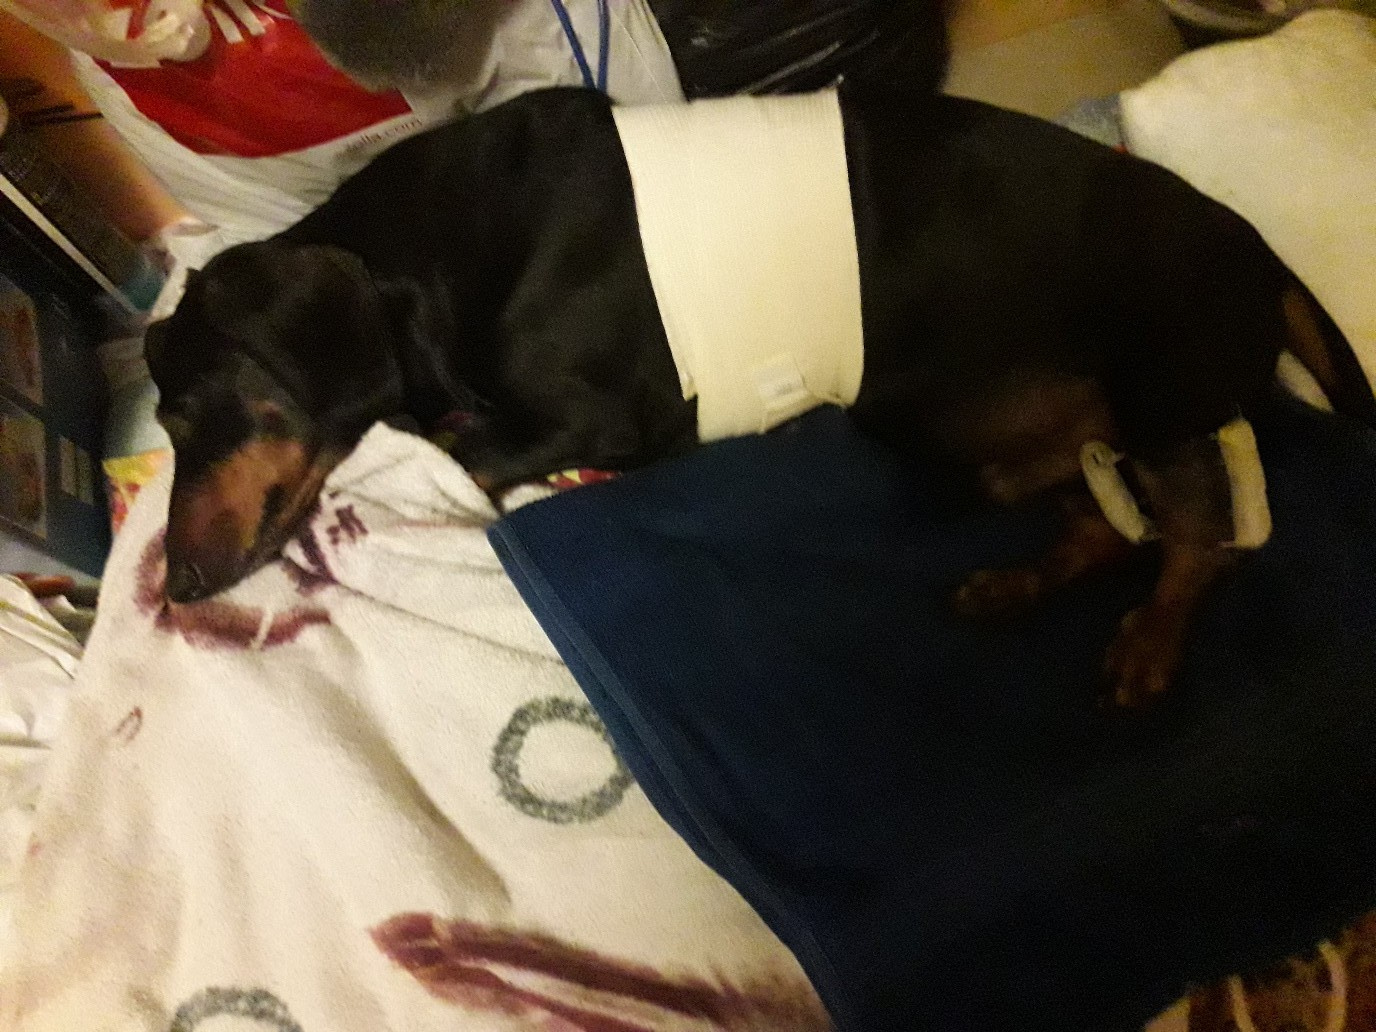 Таксу Арчи лечили почти месяц, но спасти ему жизнь ветеринарам так и не удалось